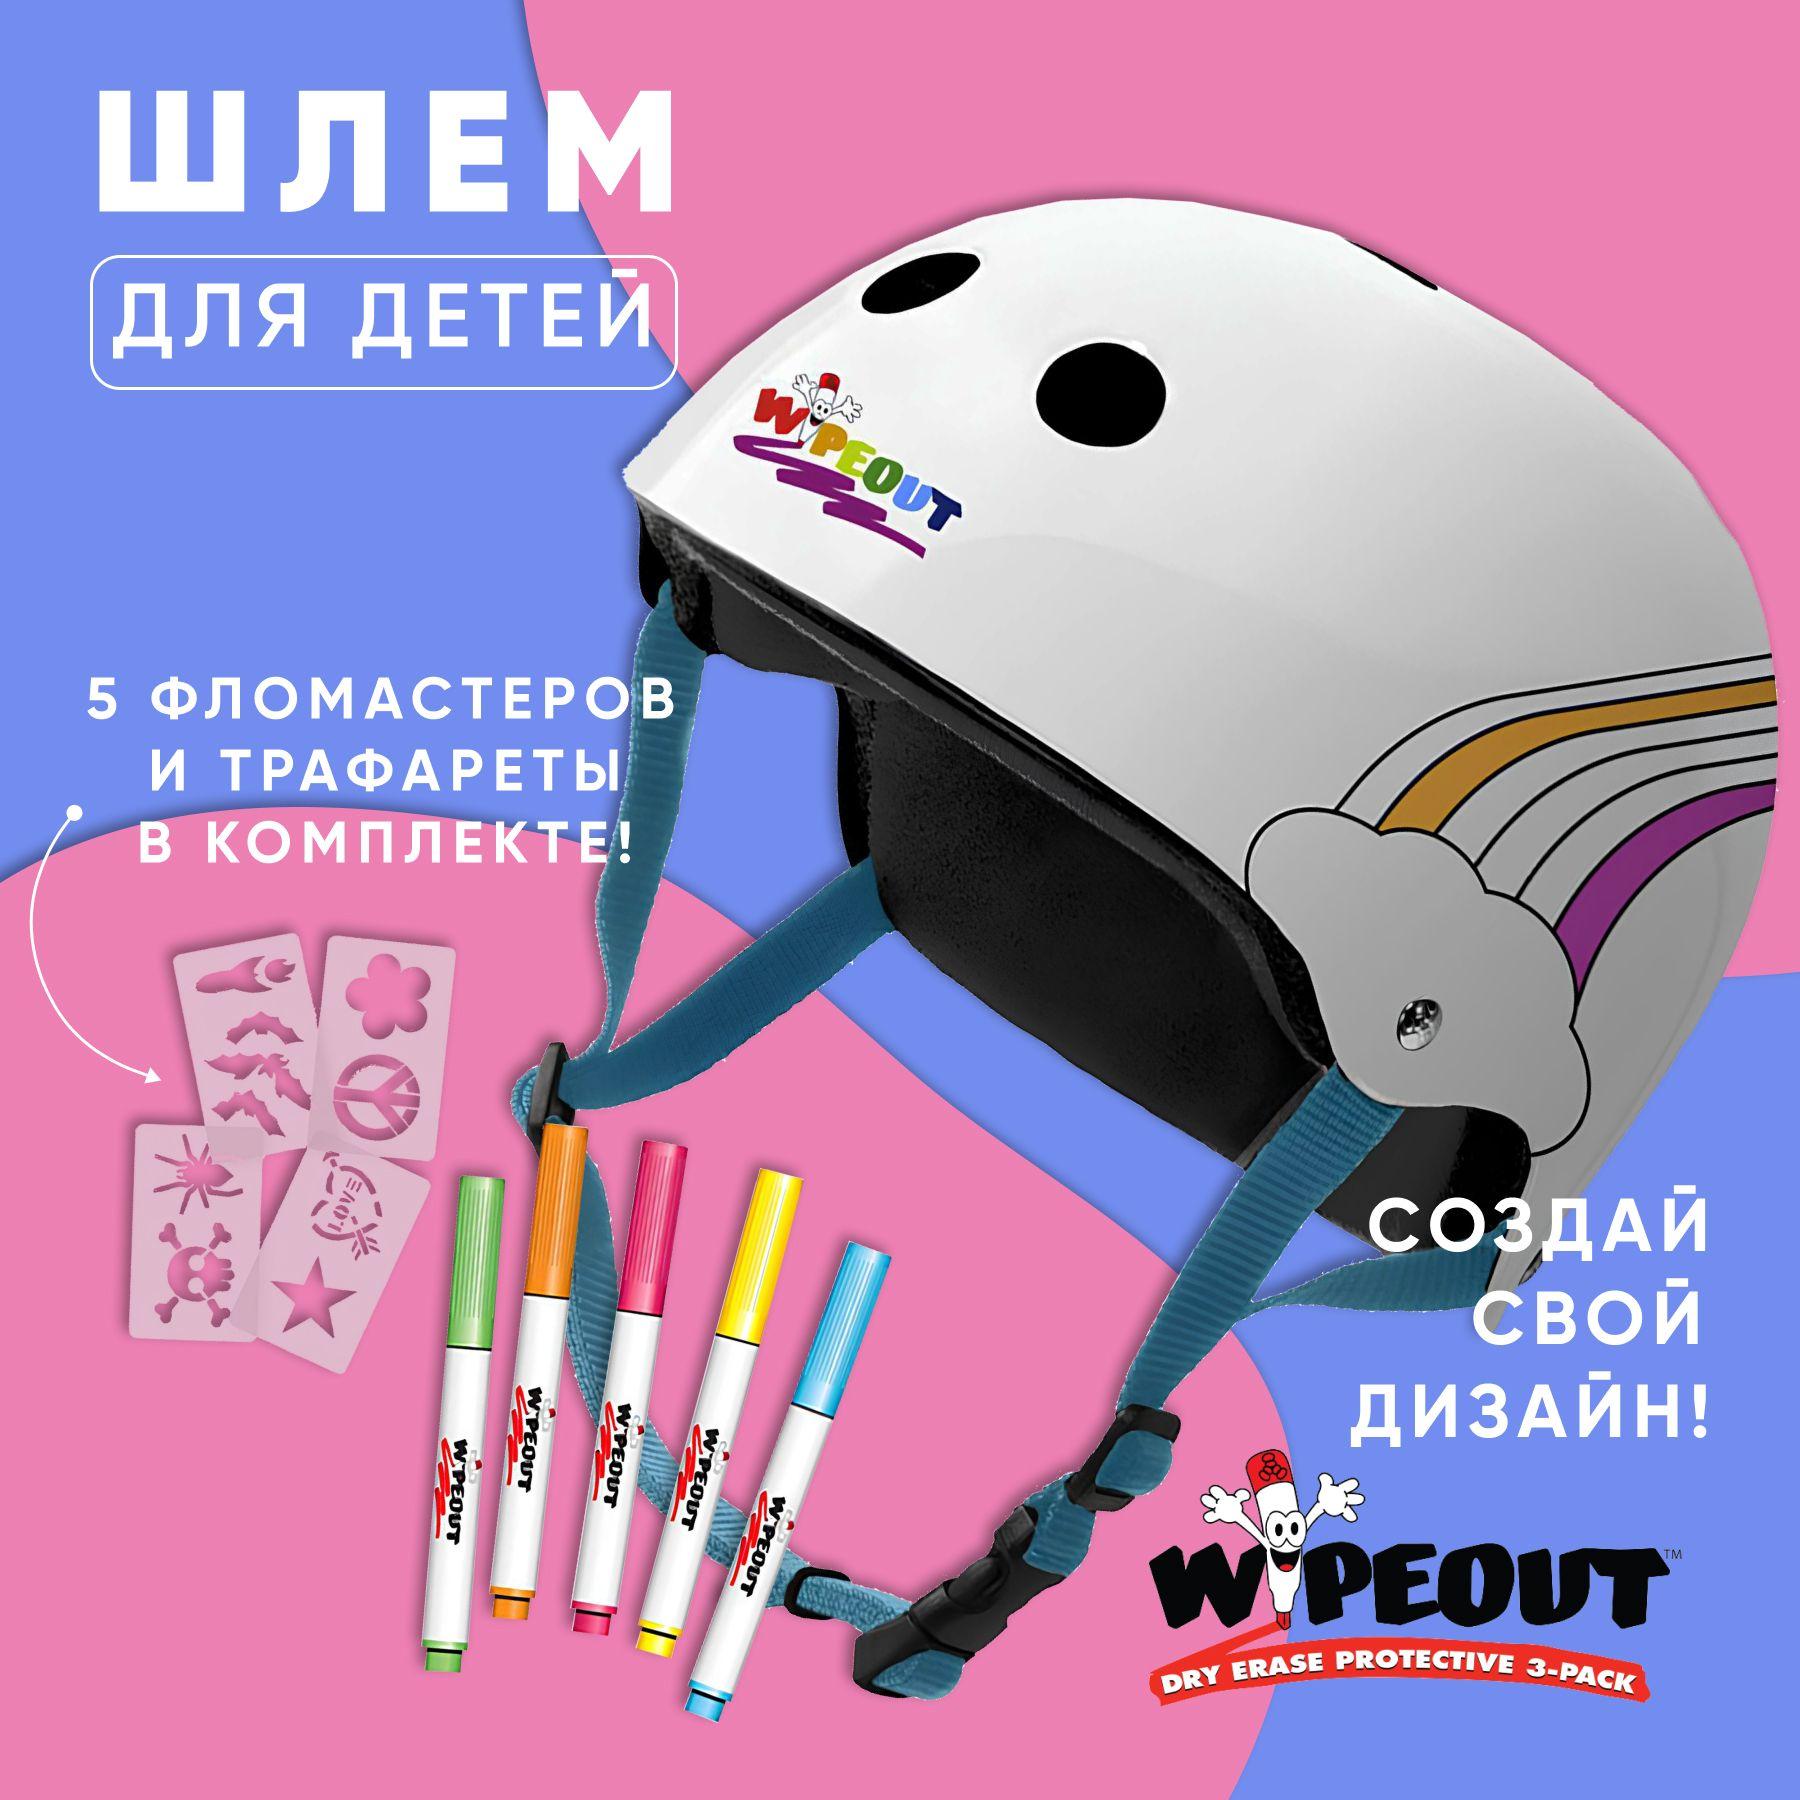 Шлем для детей и подростков Wipeout White Rainbow, с фломастерами - белый. Размер M (5+), обхват головы 49-52 см.